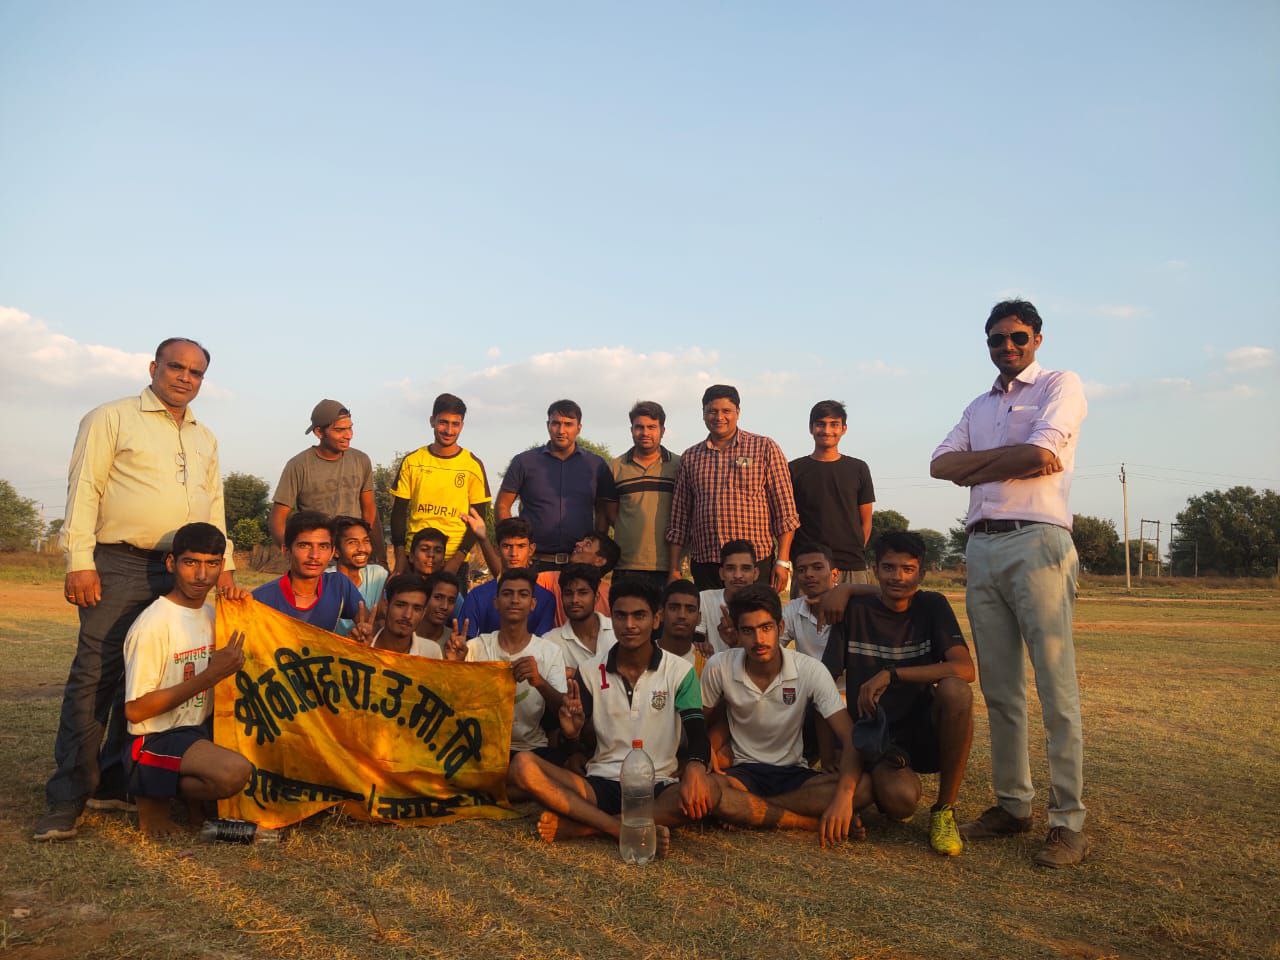 जिला स्तरीय फुटबॉल प्रतियोगिता में शाहपुरा की टीम ने बाजी मारी